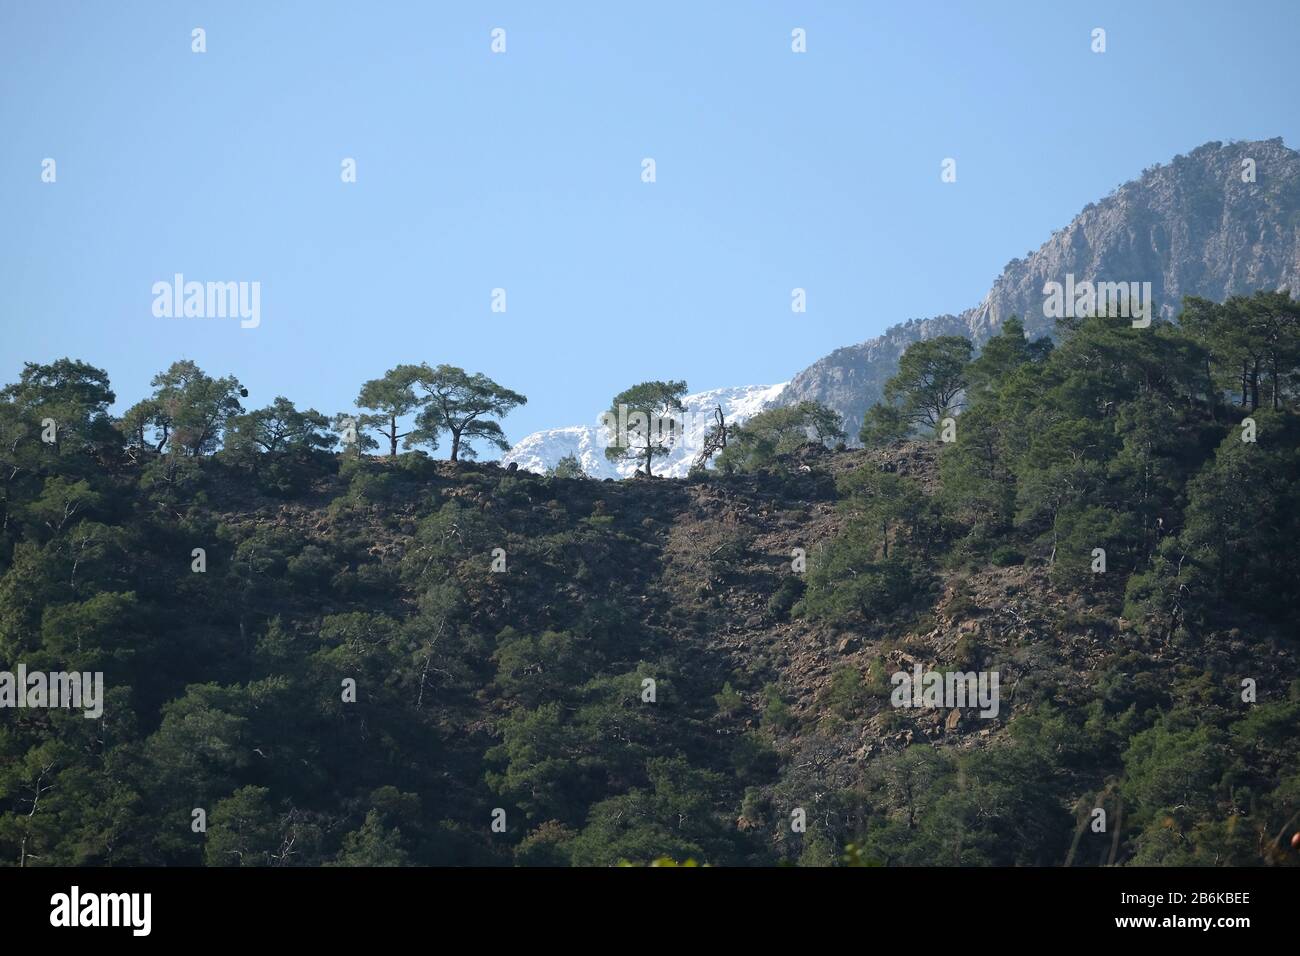 Paysage avec parc national montagnes de différentes hauteurs, pins de montagne sur les pentes et neige sur les hauts sommets à loin Banque D'Images